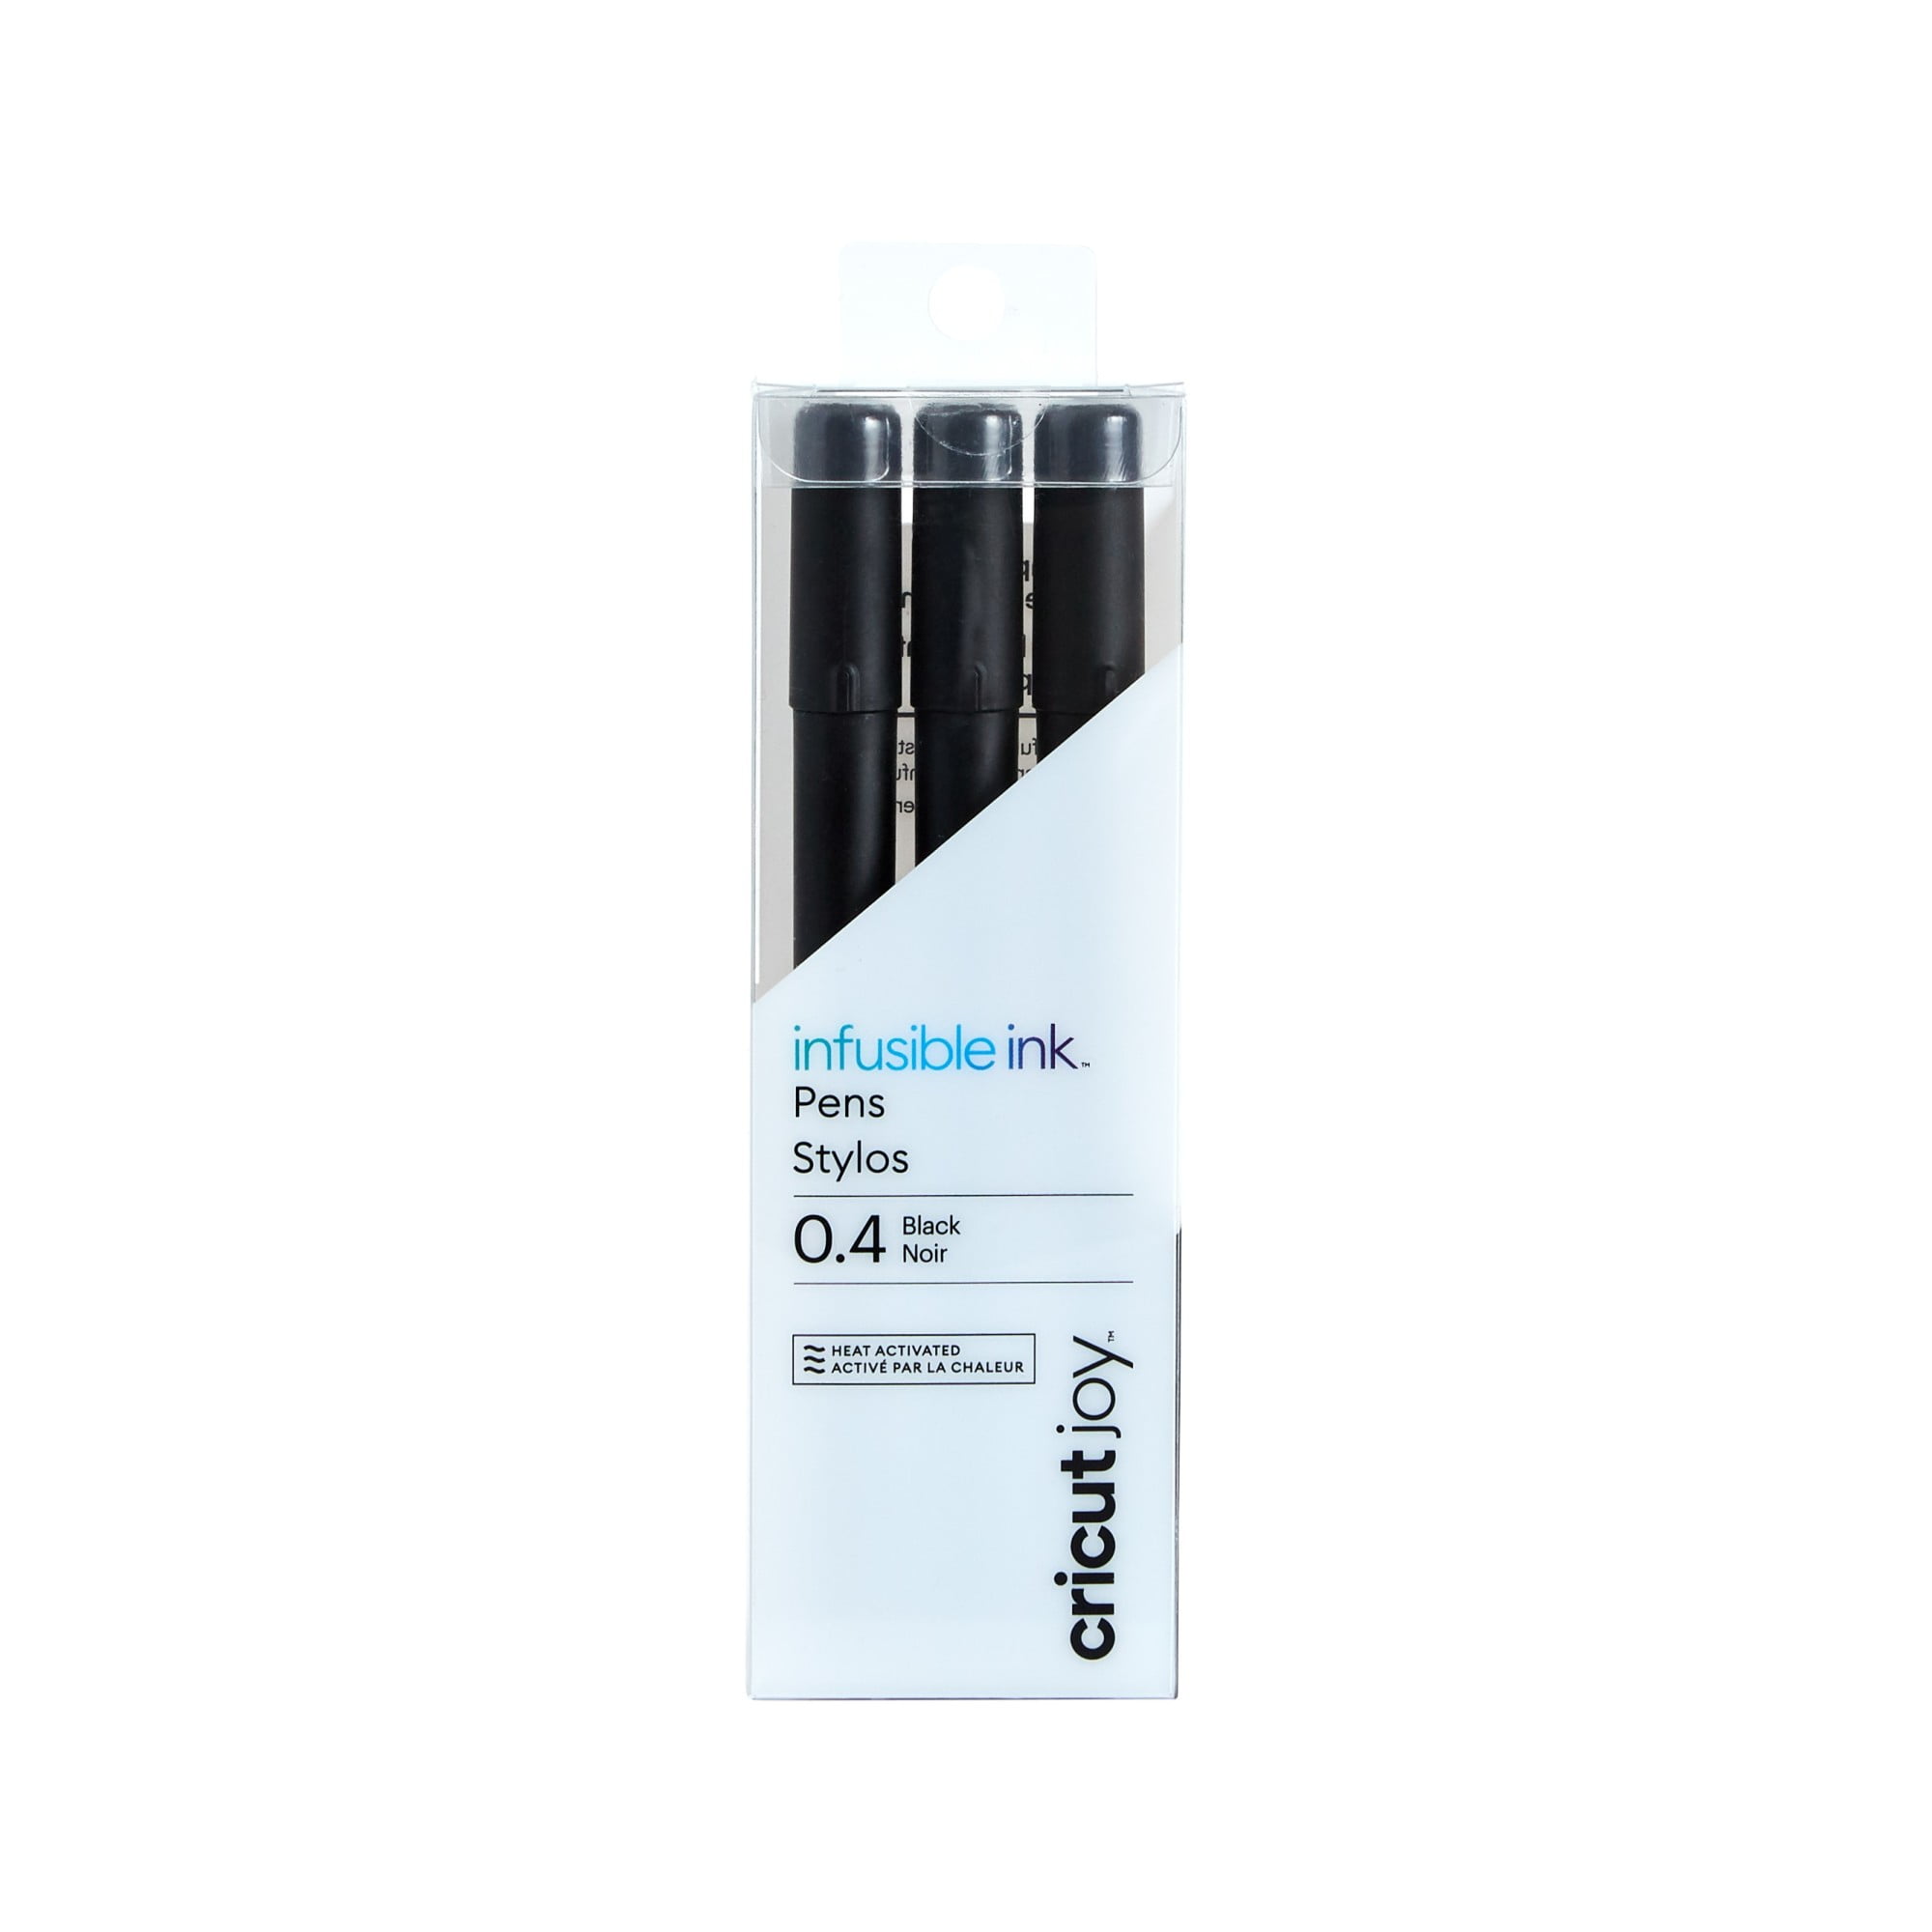 Cricut Joy Permanent Markers - A, Metallic Assorted, Set of 3, 1.0 mm